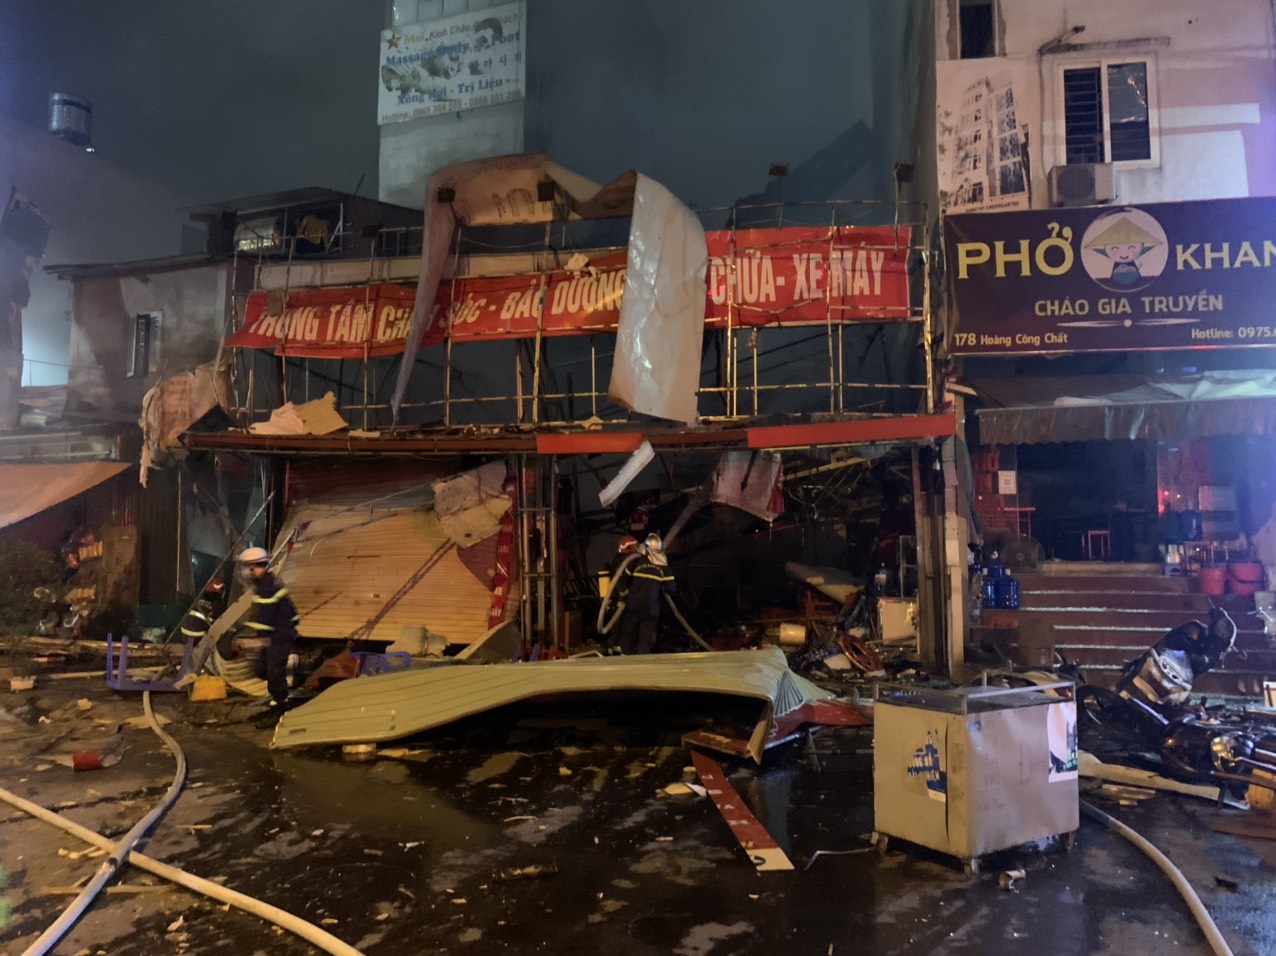 Cảnh sát bác bỏ thông tin có người tử vong trong vụ nổ lớn ở Hà Nội - Ảnh 2.